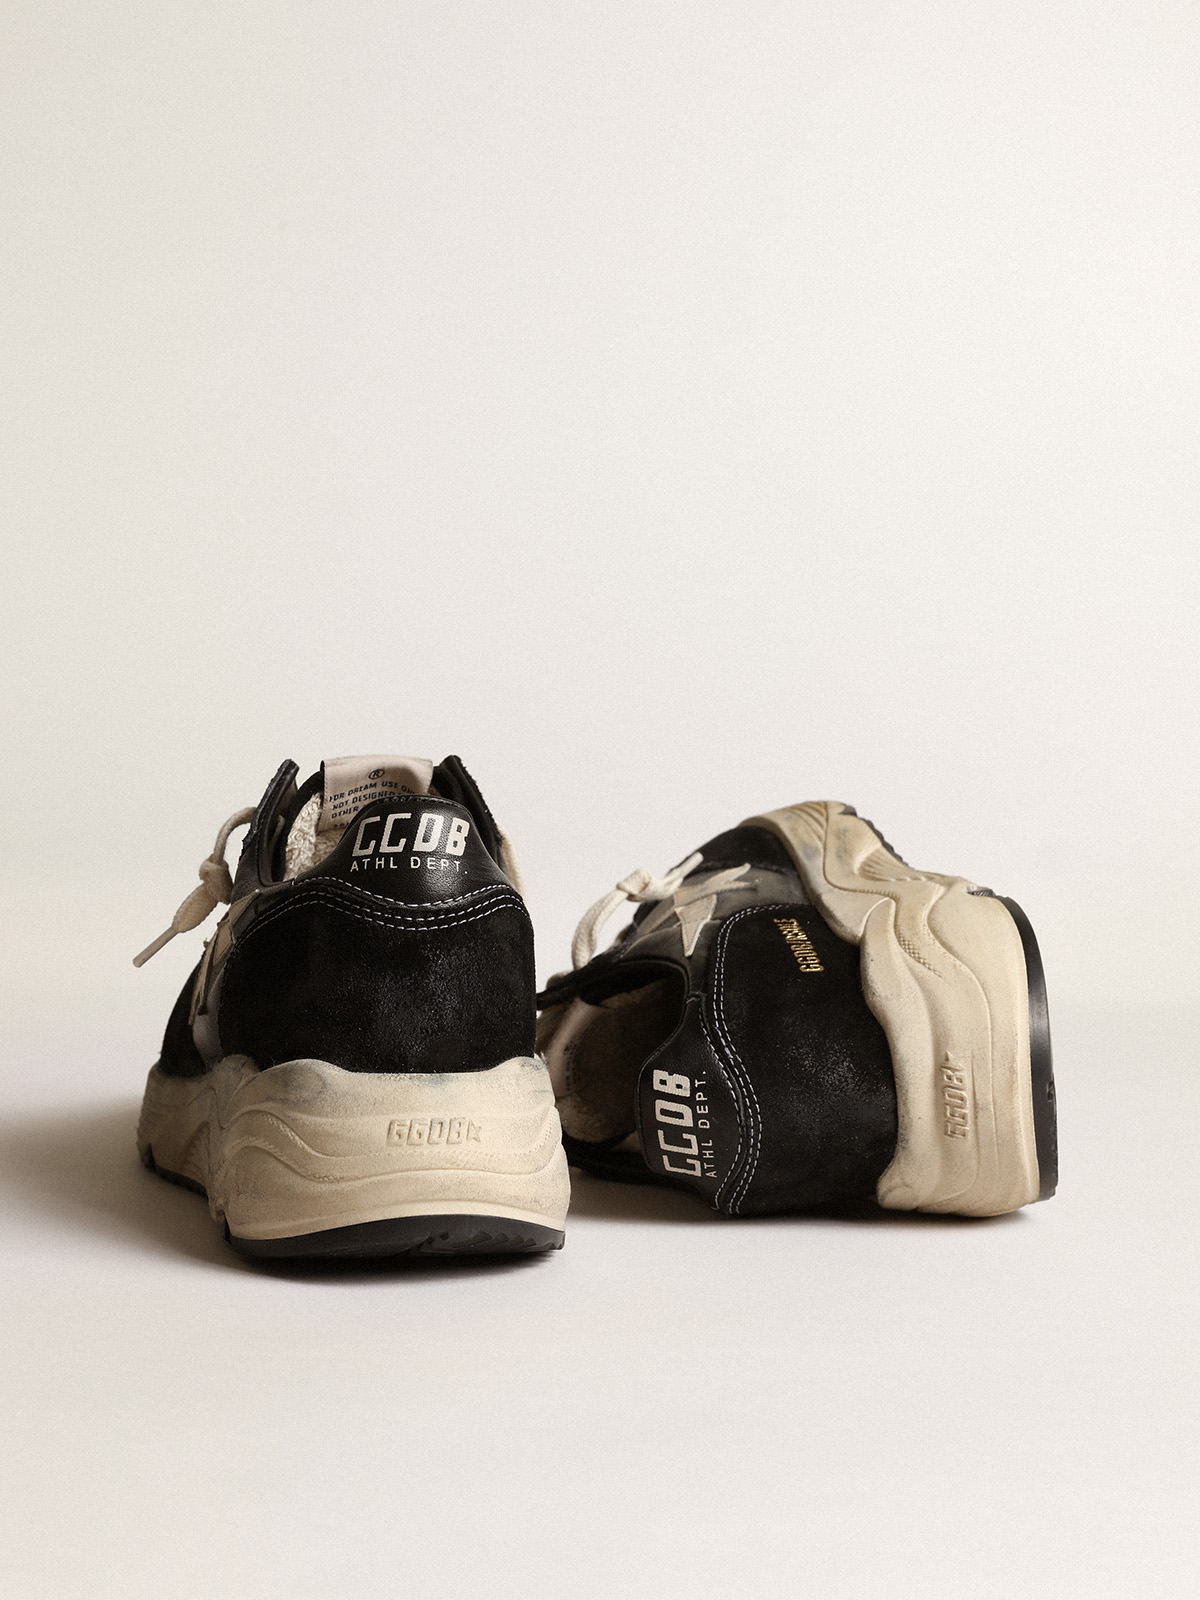 GOLDEN GOOSE Sneaker Running in Black/White 39